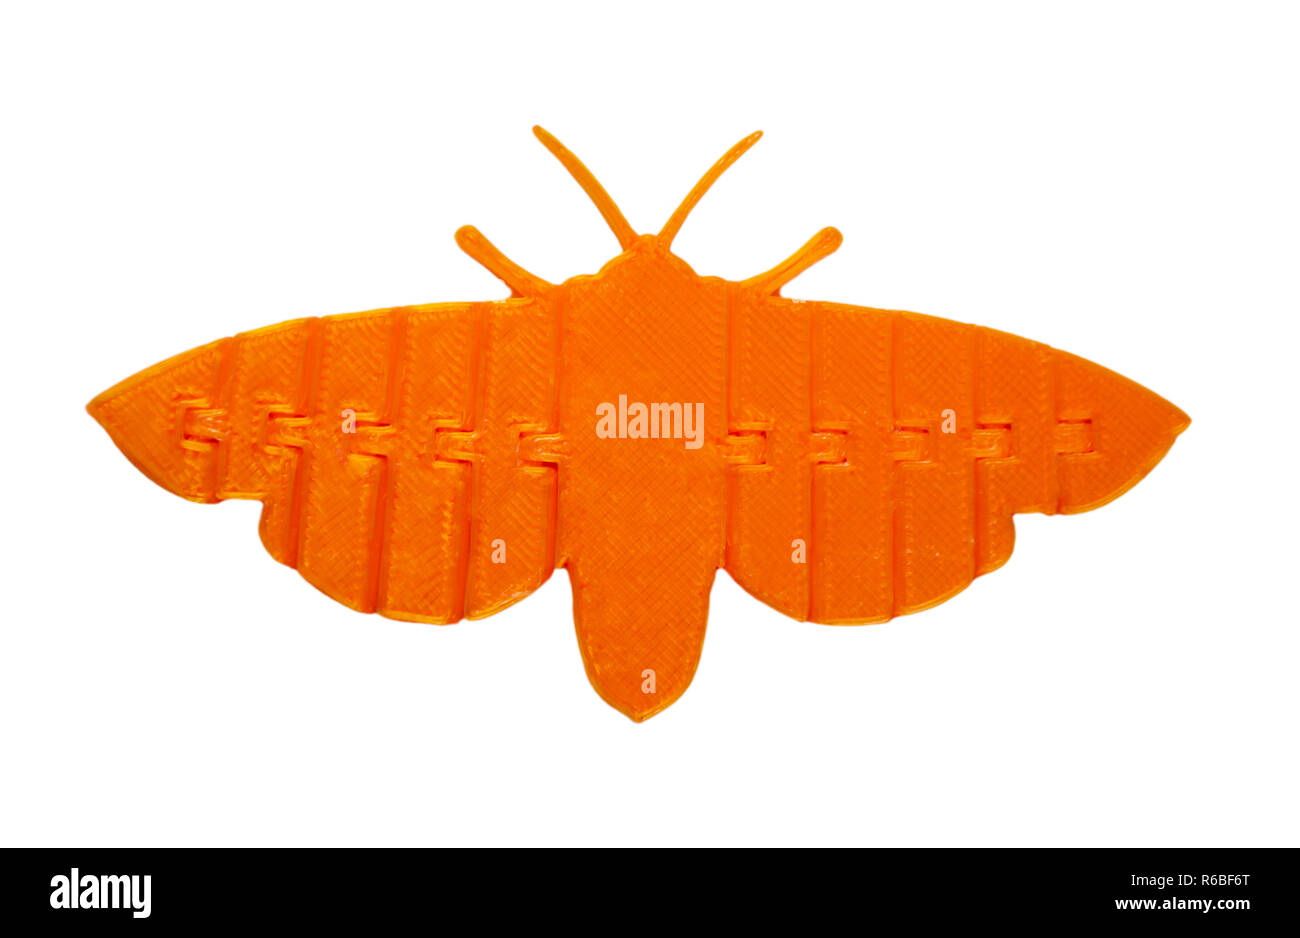 Une lumière orange objet en forme de jouet papillon imprimé sur imprimante 3d isolé sur fond blanc. Fused deposition modeling, FDM. La technologie moderne Concept additif progressif pour l'impression 3D. Banque D'Images